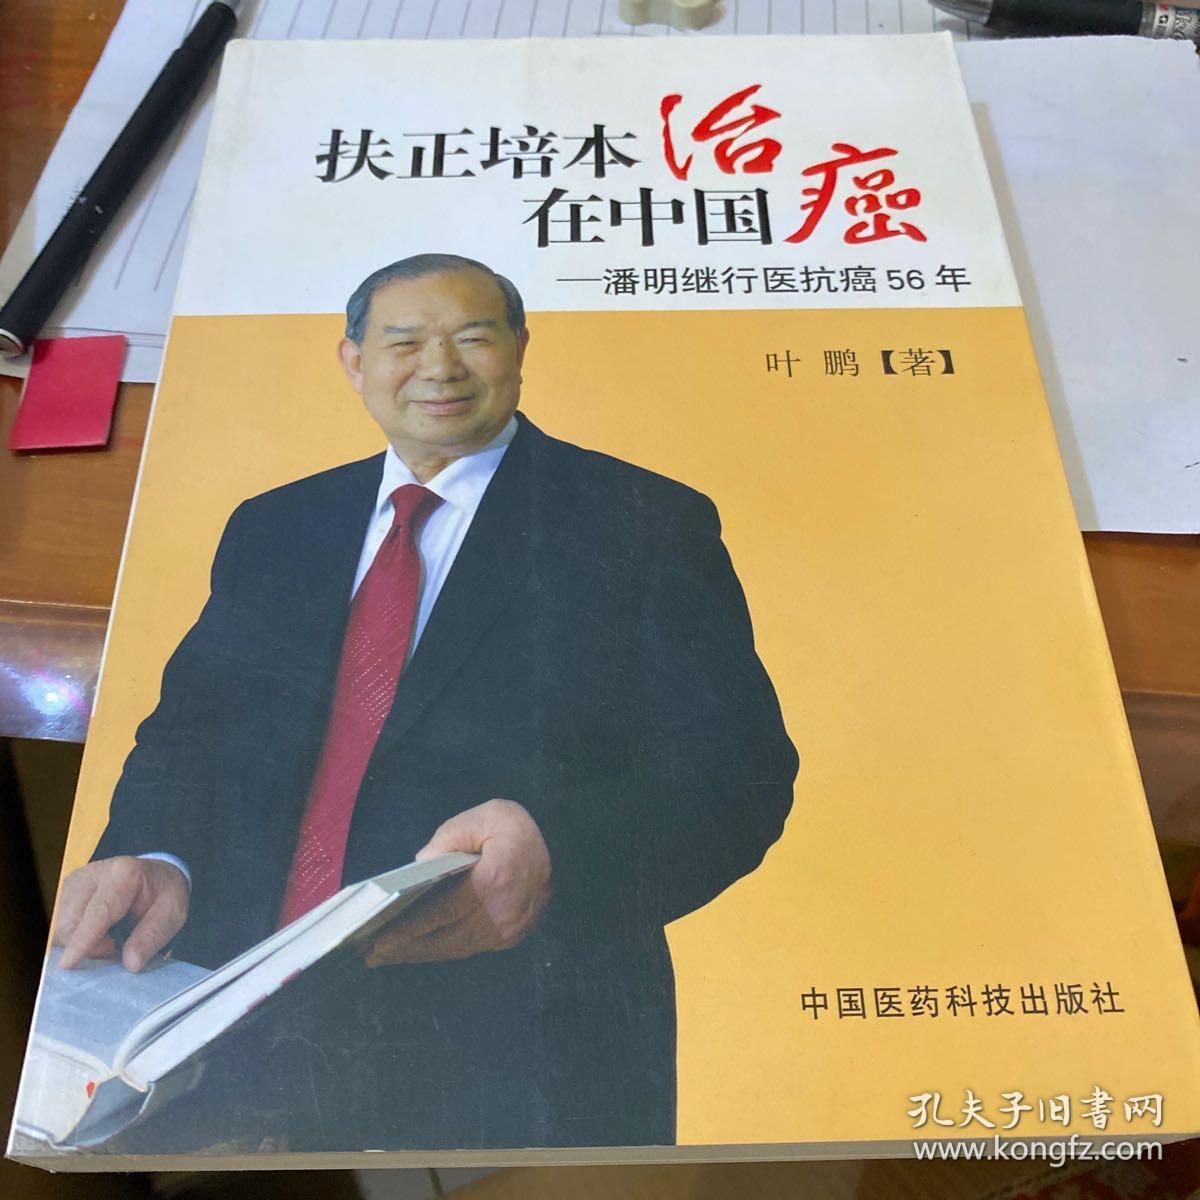 扶正培本治癌在中国：潘明继行医抗癌56年